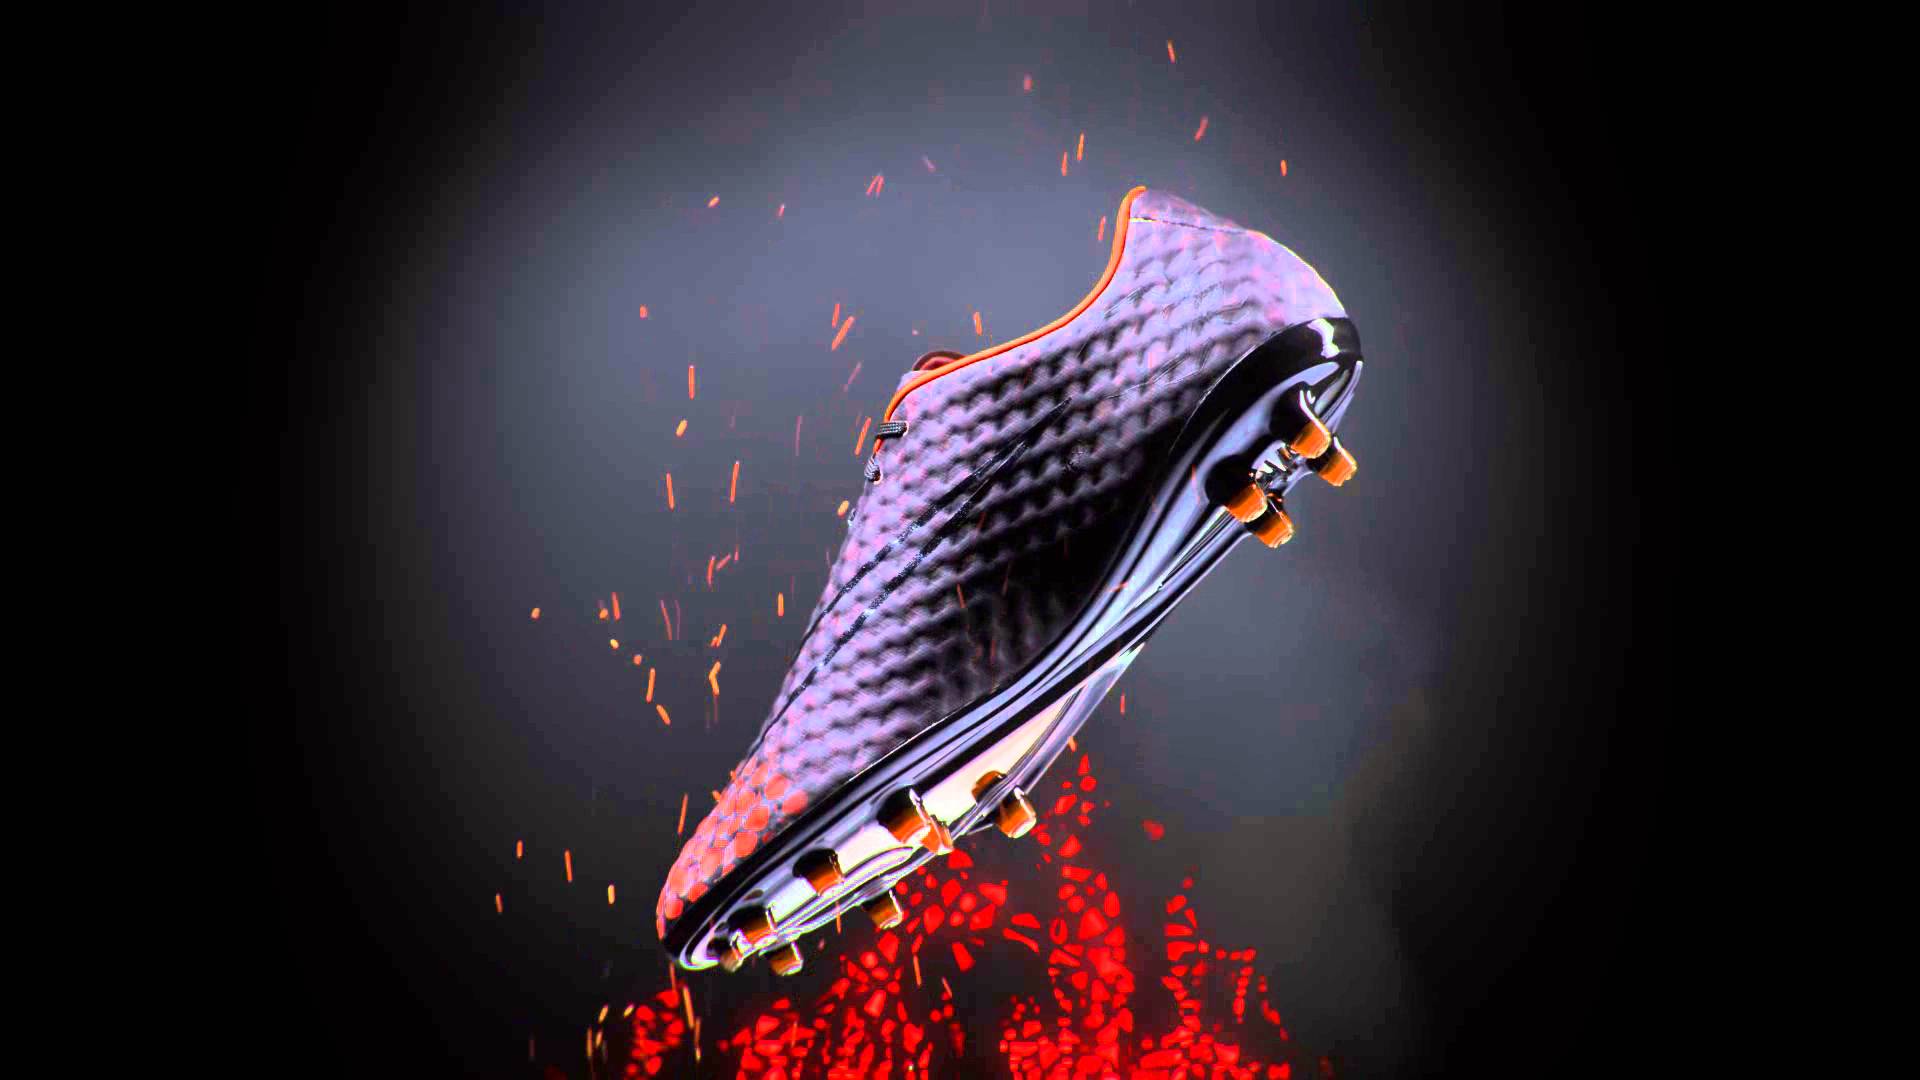 Nike Hypervenom Phantom II AG r, Botas de fútbol para